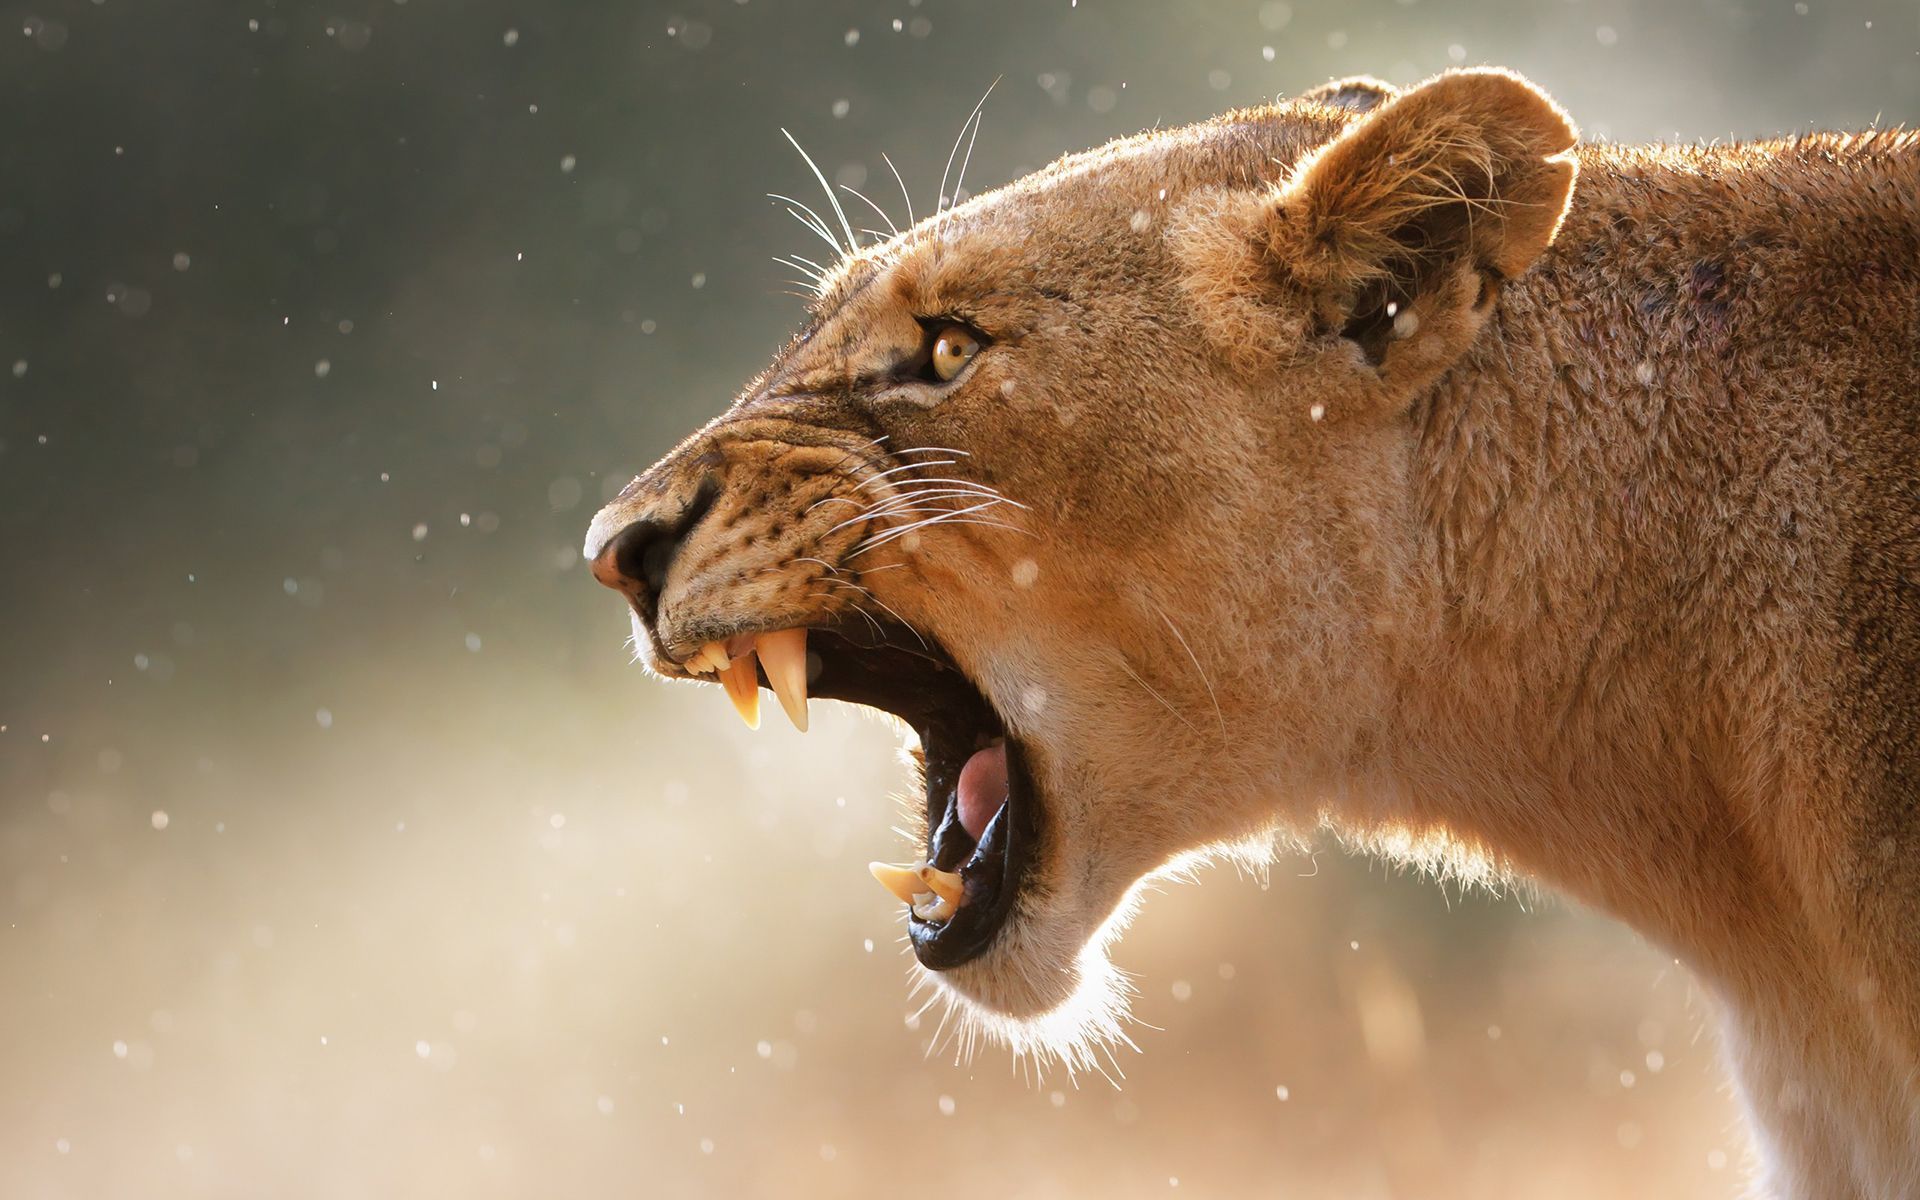 Roaring-lion-beautiful-images-desktop-fullscreen-wallpapers : PC ...